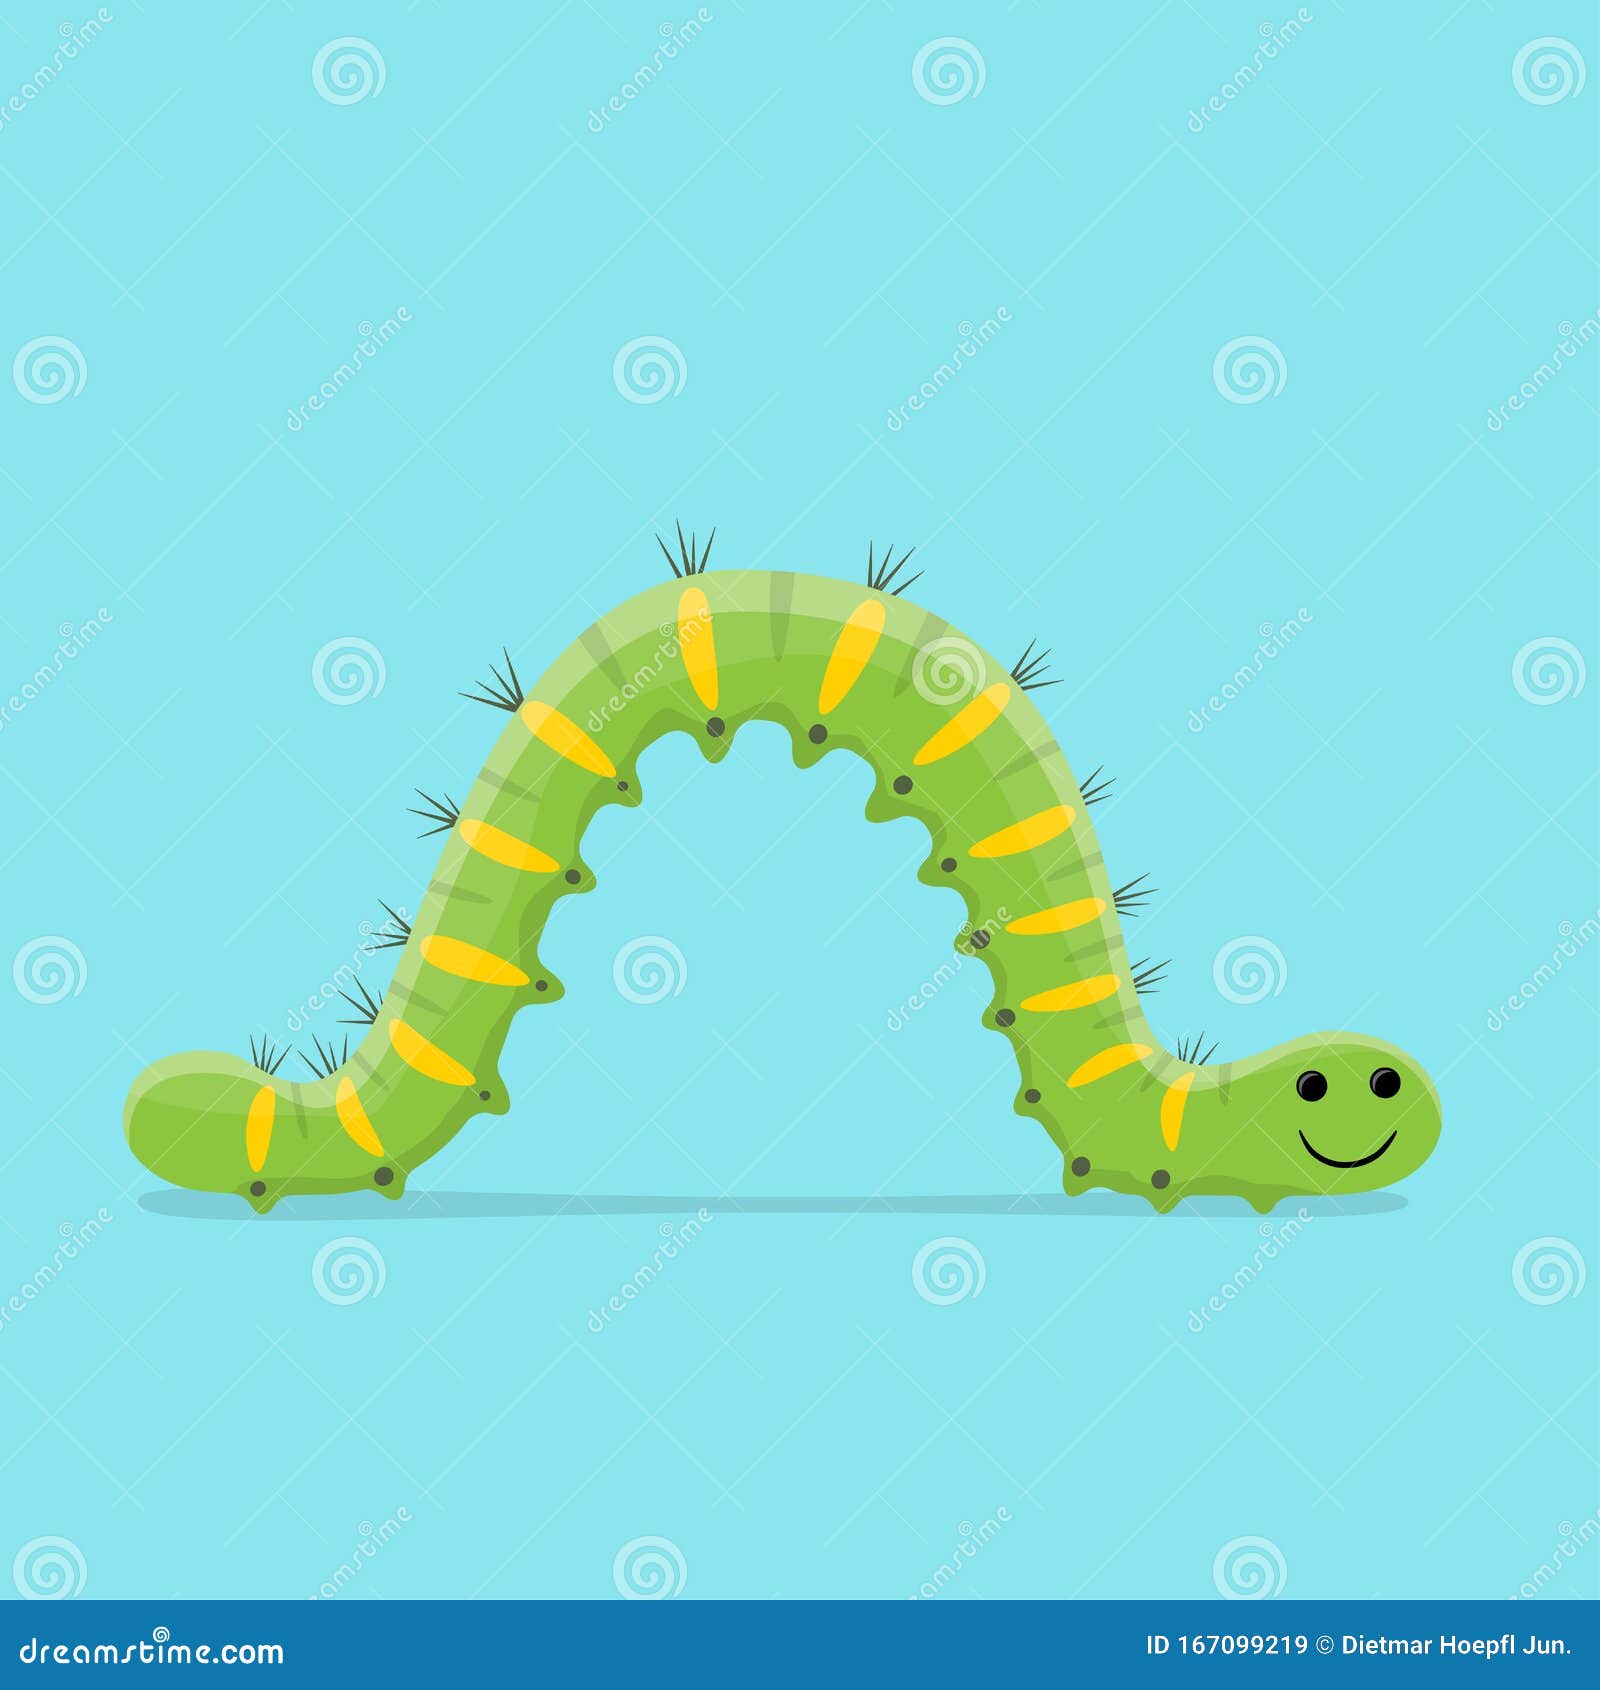 funny cartoon  of a crawling caterpillar